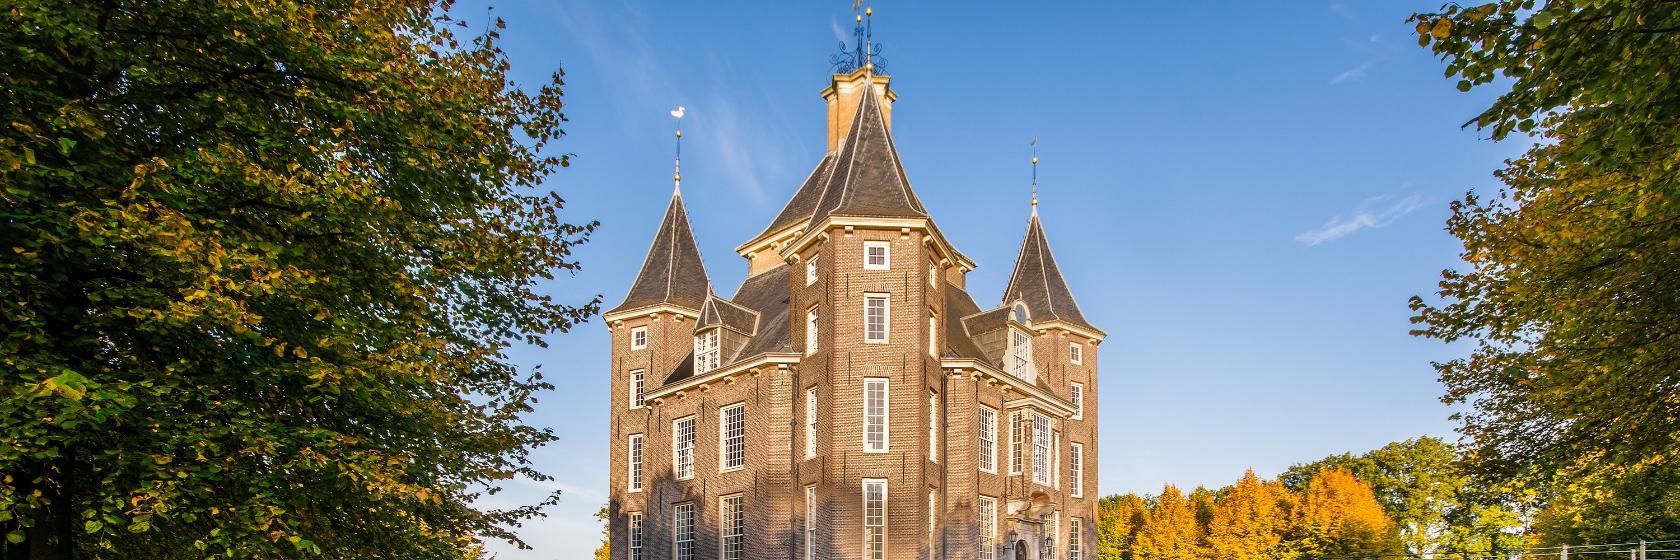 10 Best Heemstede Hotels, Netherlands (From $108)